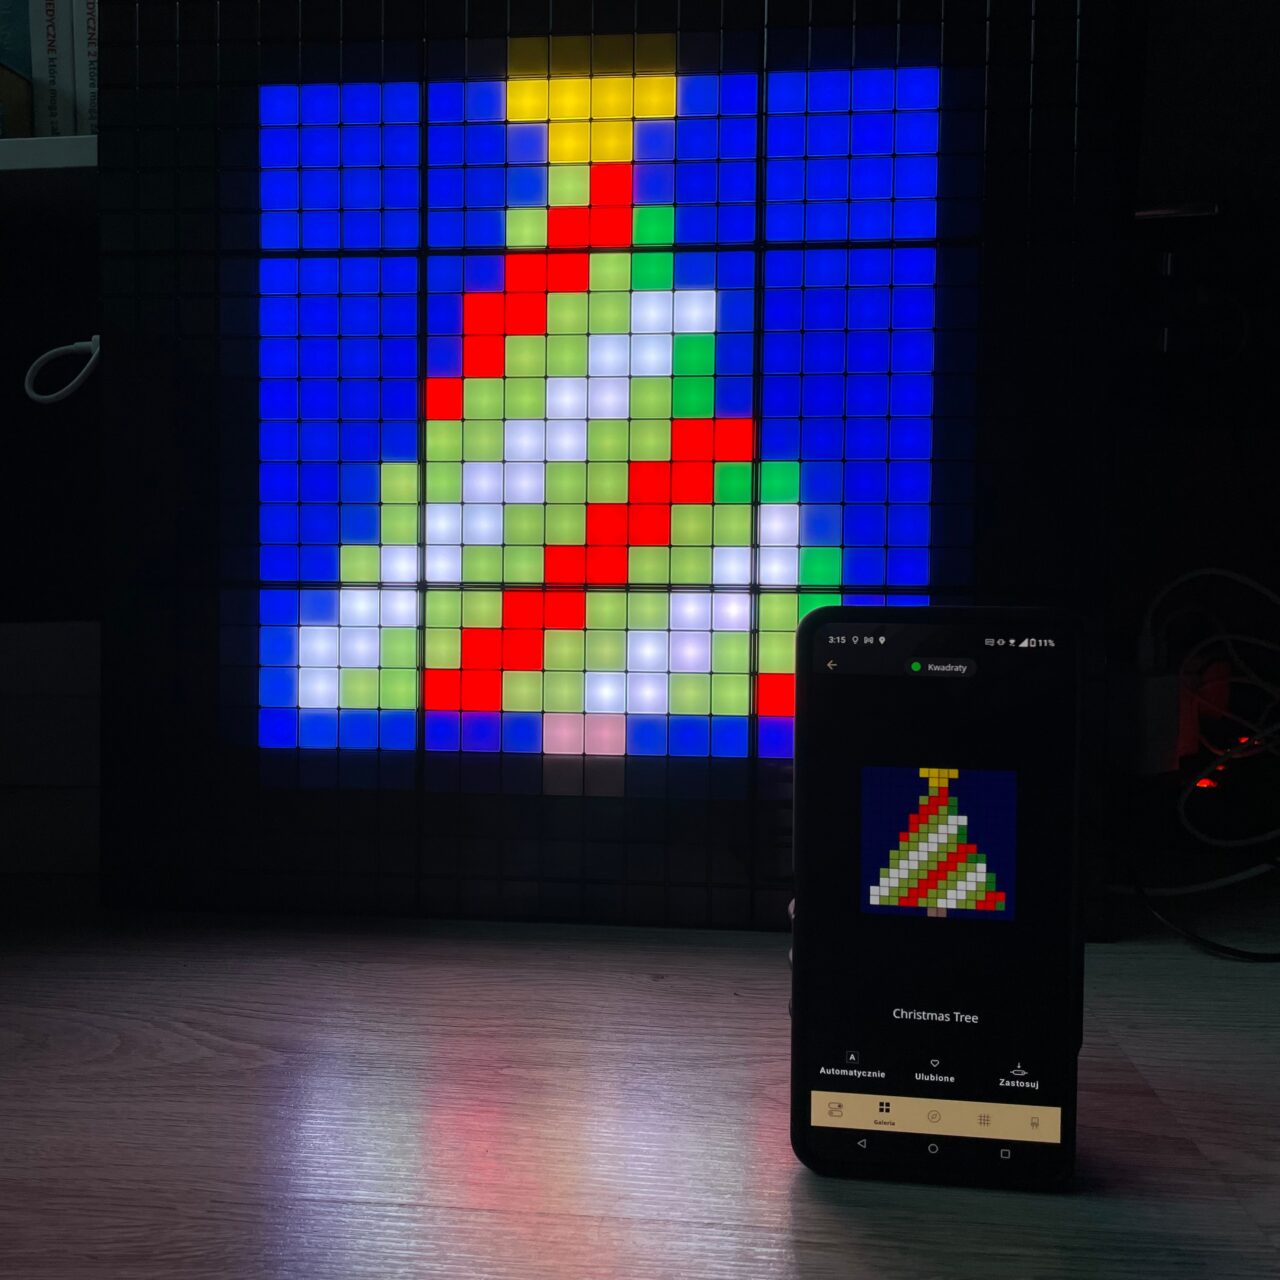 Inteligentna tablica świetlna na ścianie wyświetlająca pixel art choinki z towarzyszącym obrazem tej samej choinki na ekranie smartfona, umieszczonego pionowo na podłodze.